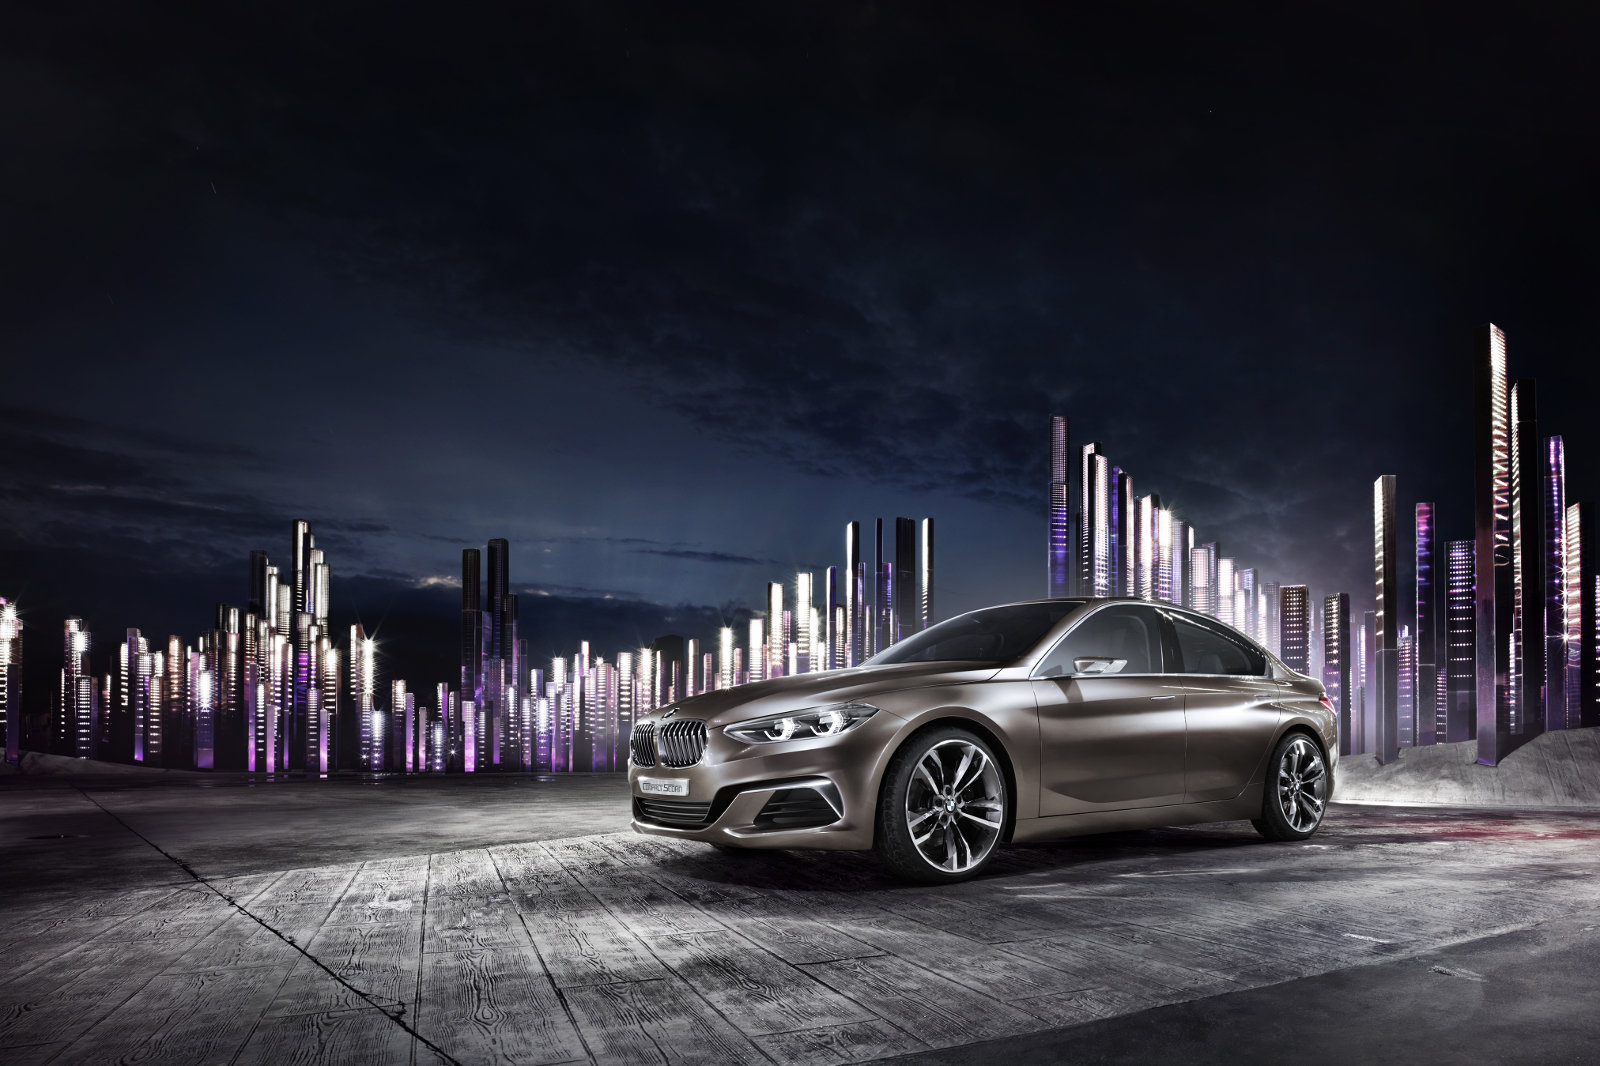 Bronzová metalíza mění v různých úhlech svou barvu, BMW Concept Compact Sedan.